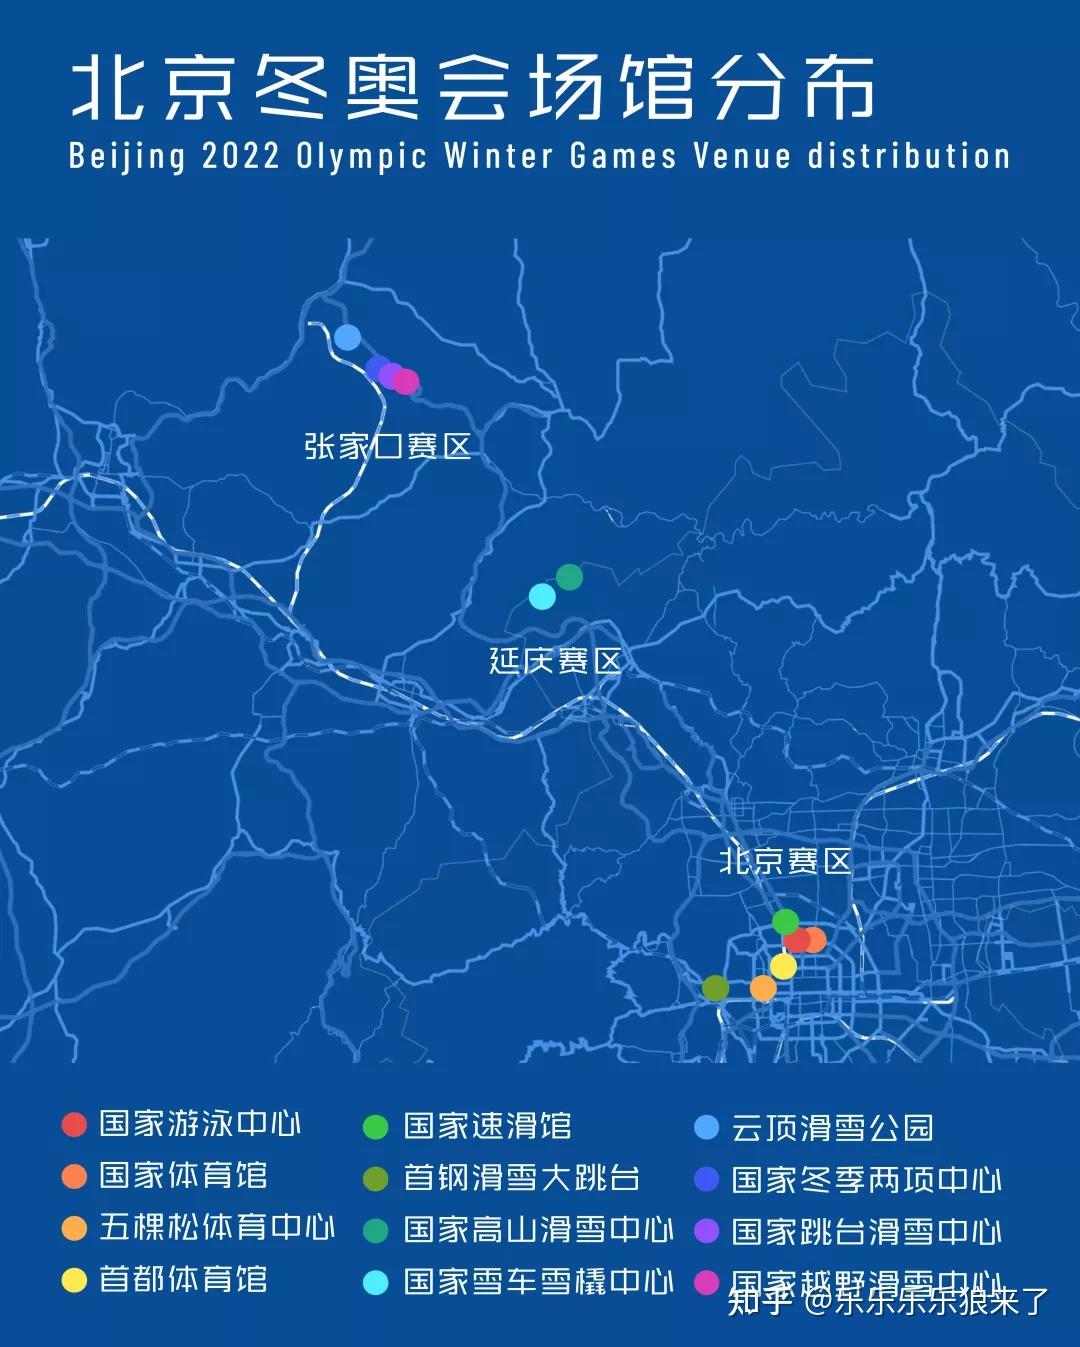 2022年北京冬奥会开幕式有哪些亮点?如何评价本次开幕式?